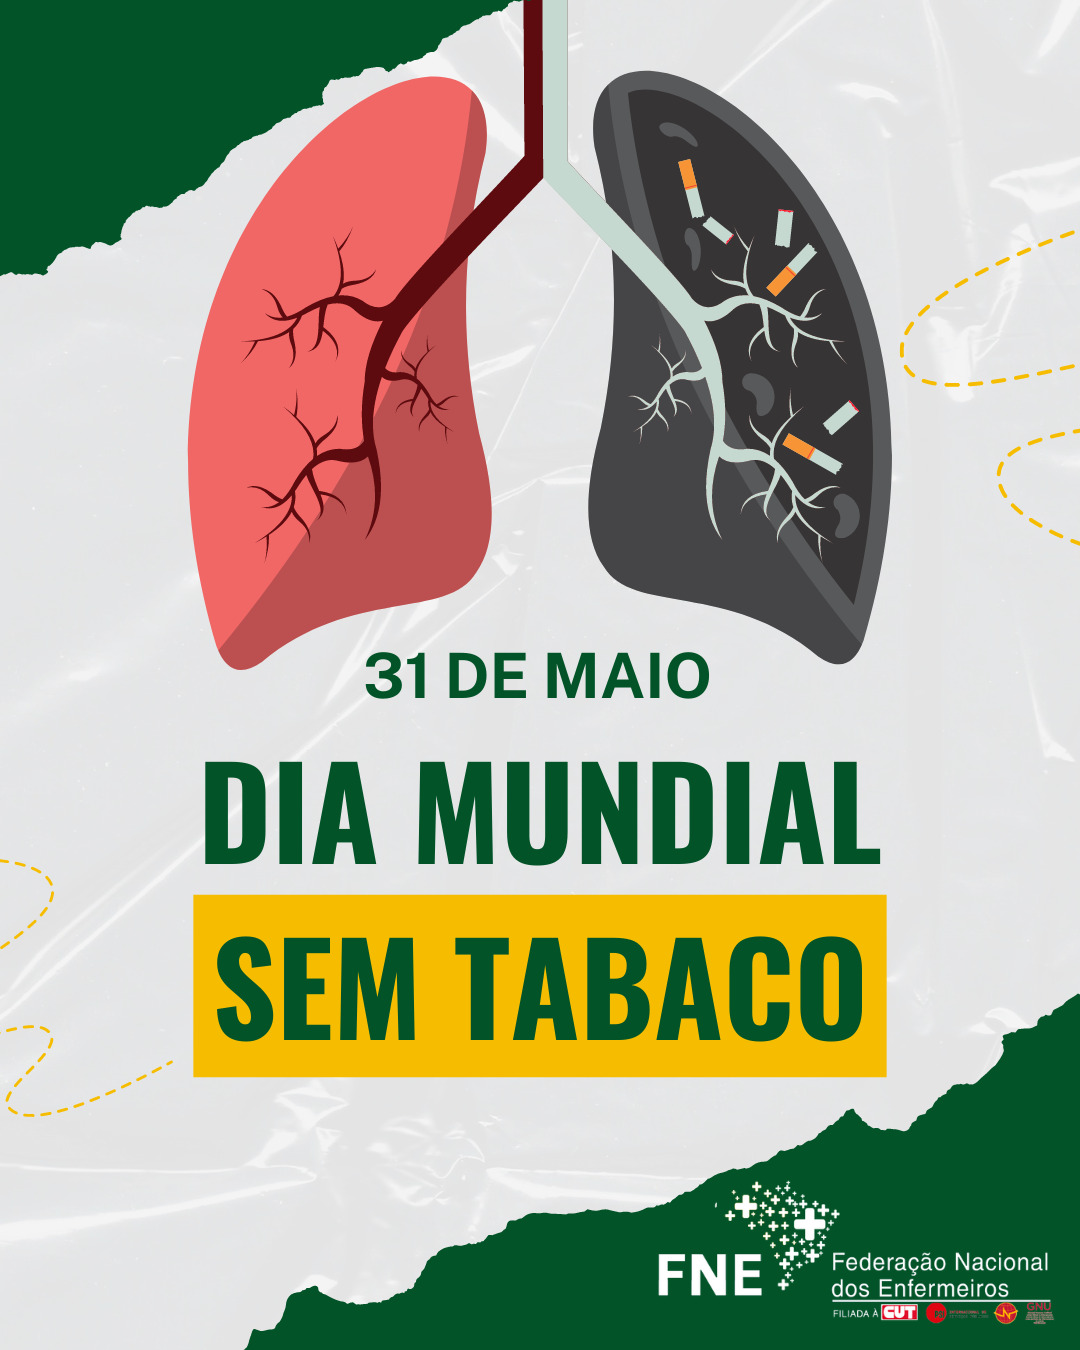 31 de maio - Dia Mundial sem Tabaco